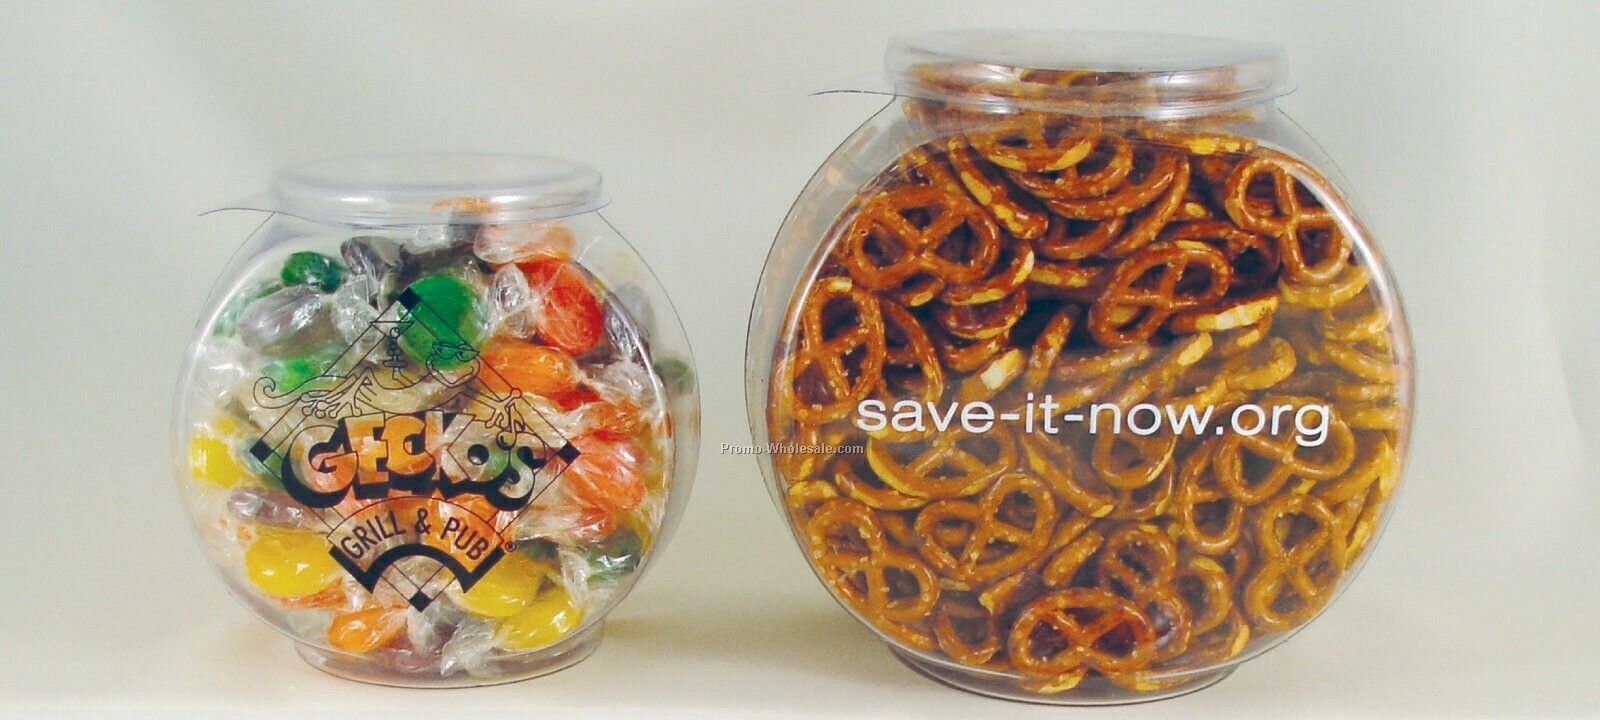 1 Quart Plastic Fishbowl Filled W/ Salted Pretzels 5-1/2"x3-5/8"x5-3/8"